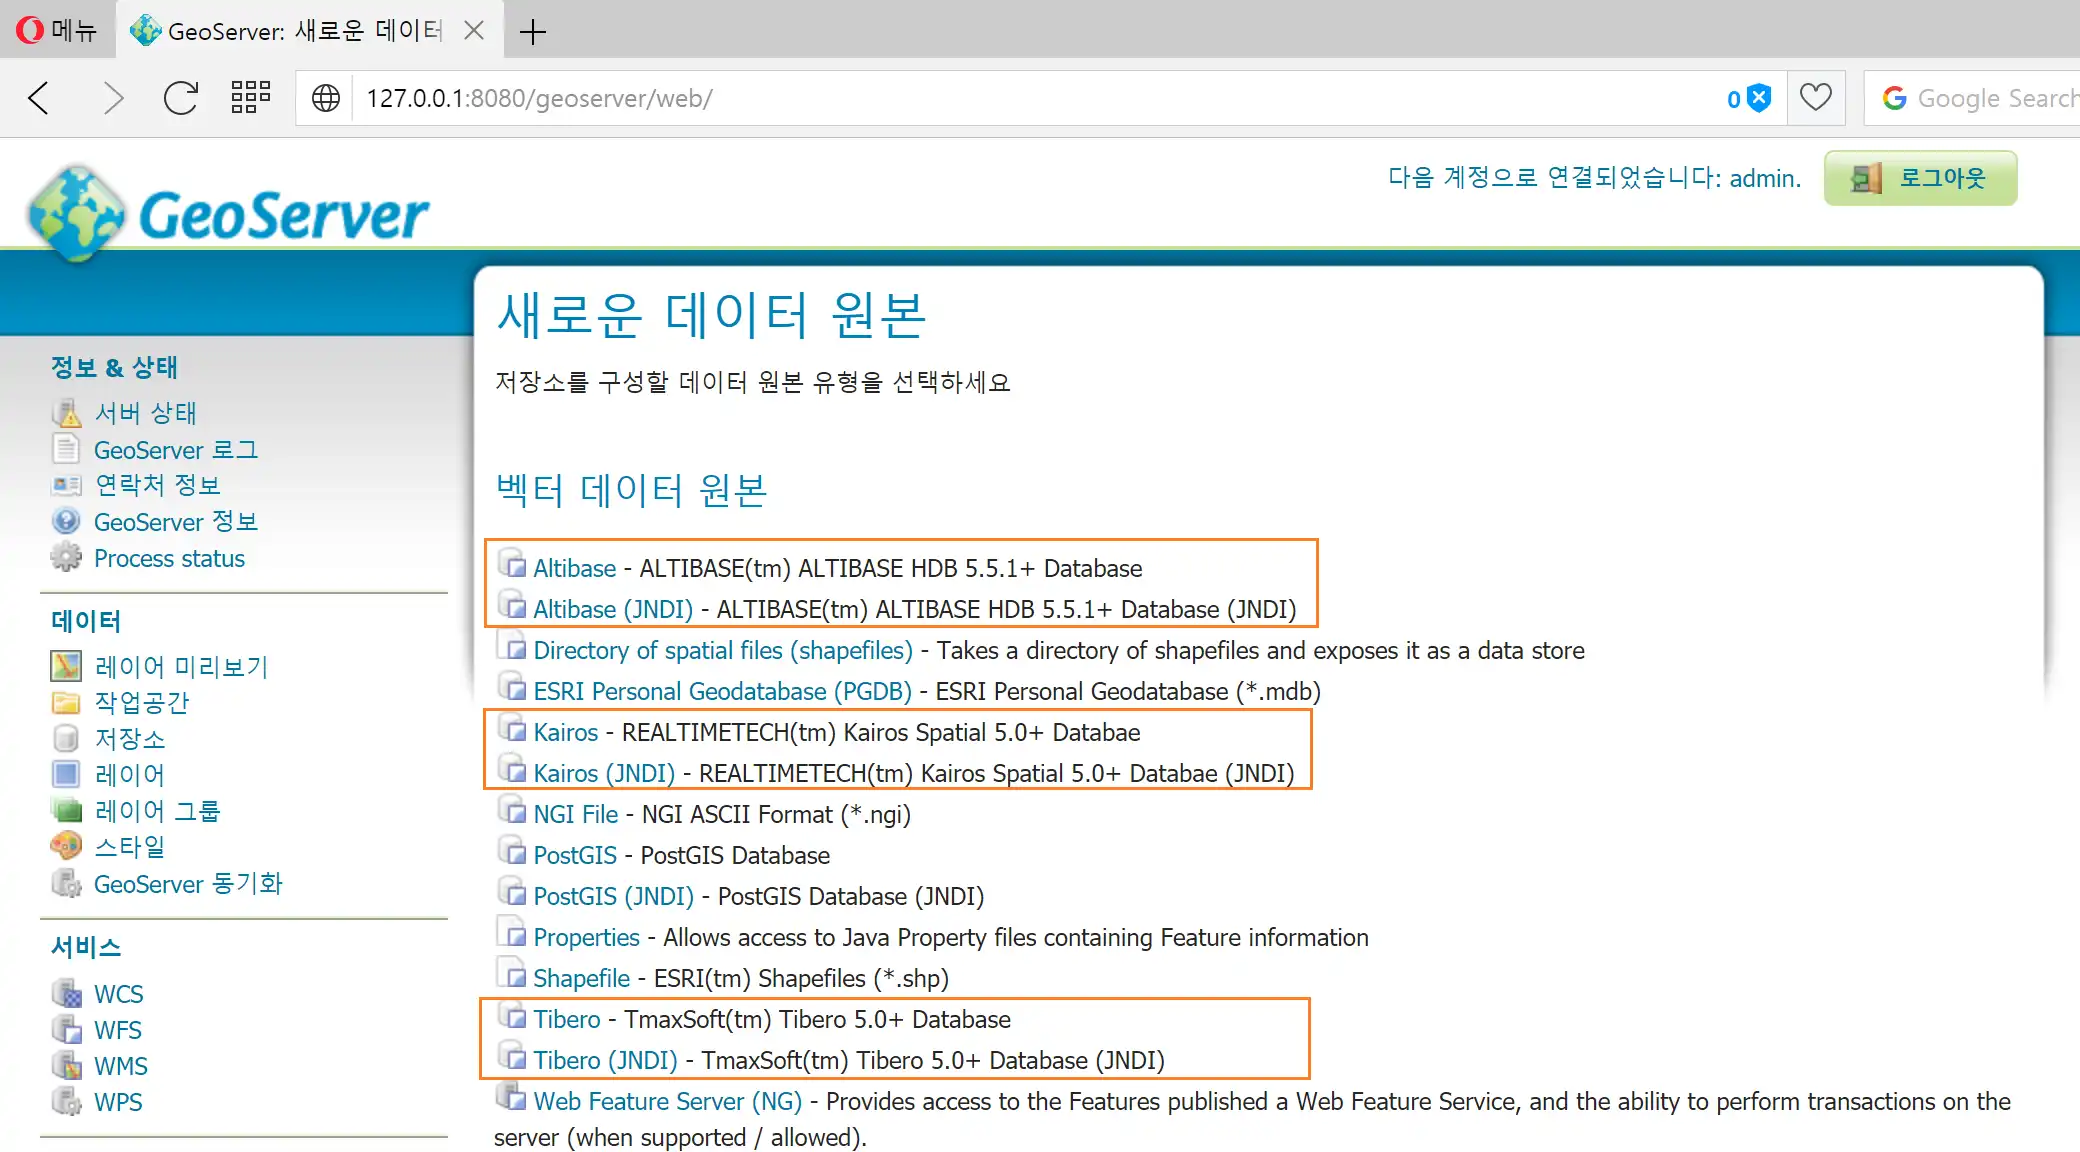 הורד את כלי האינטרנט או את אפליקציית האינטרנט gt-jdbc-korean להפעלה בלינוקס באופן מקוון